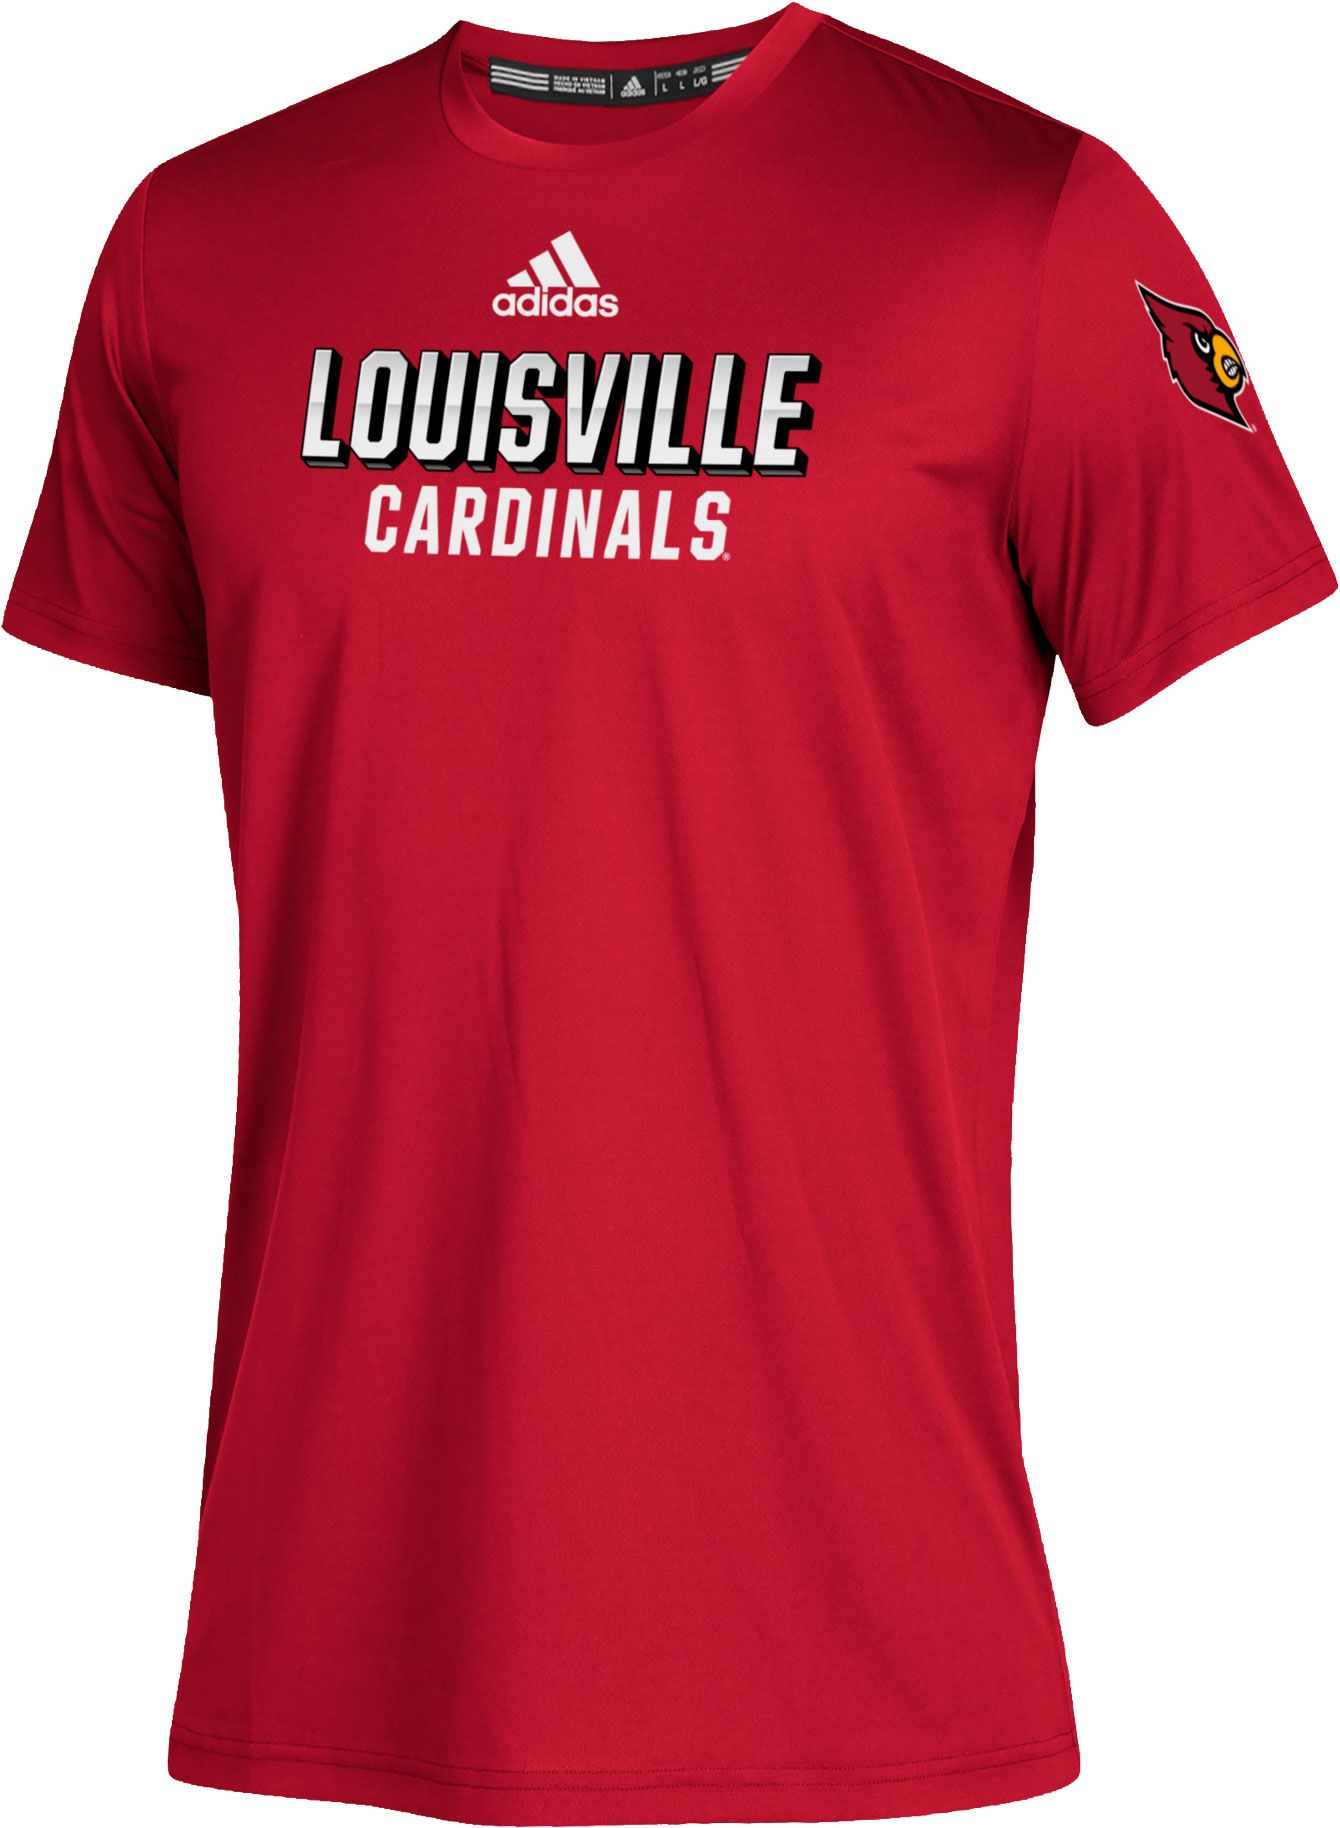 louisville cardinals kids jersey